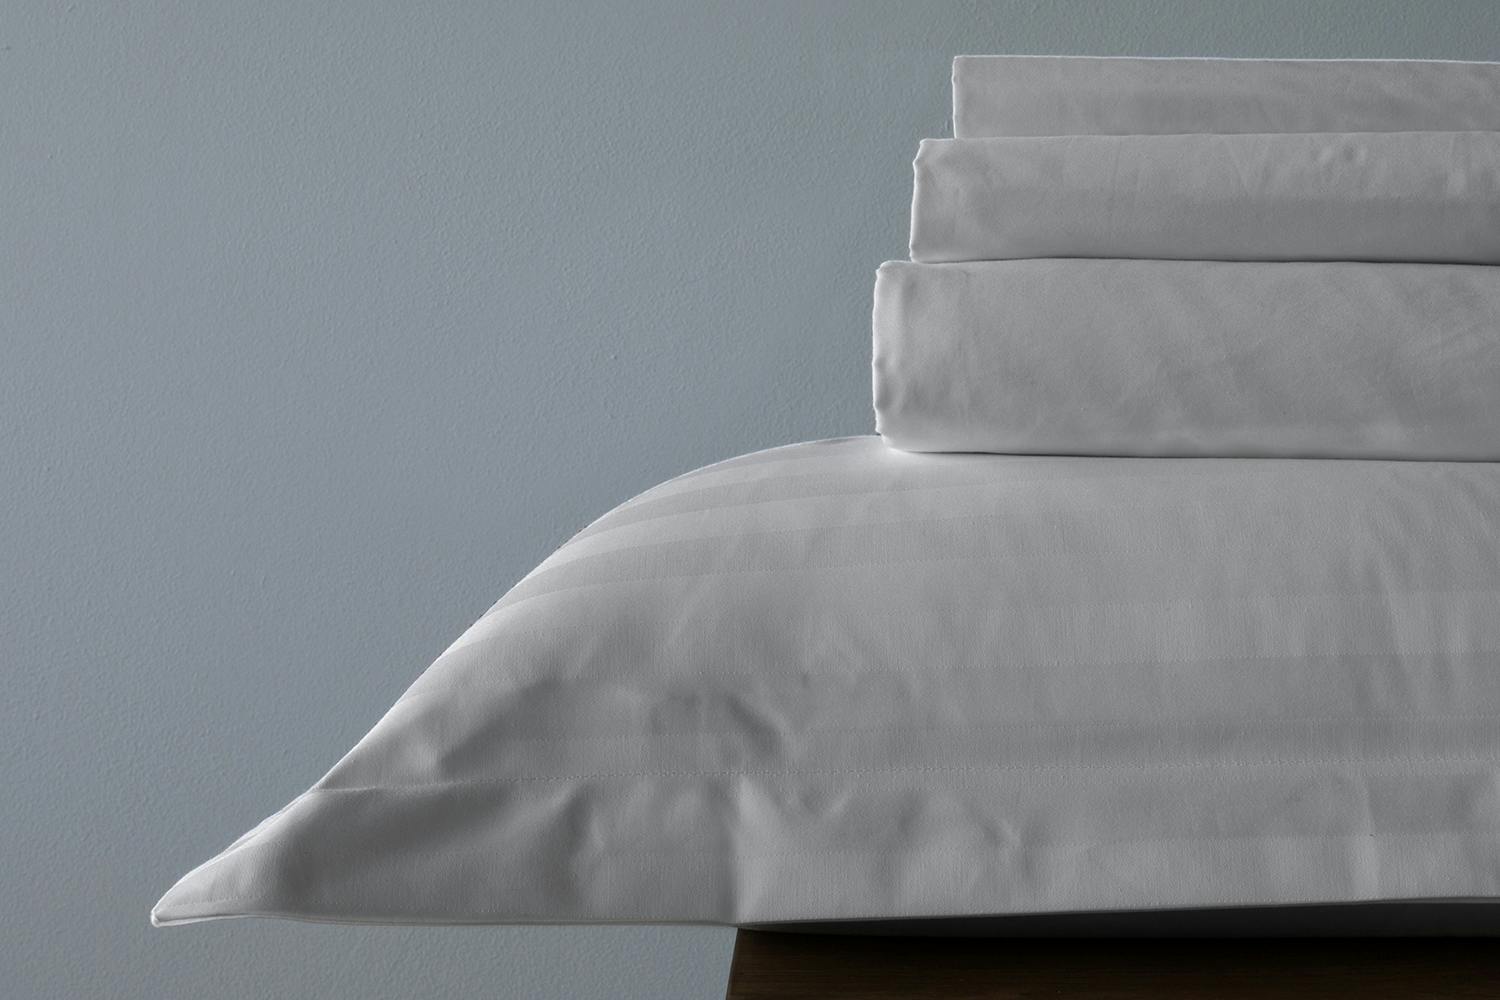 The Linen Room | 500tc Cotton Percale | Grey | Pillowcase